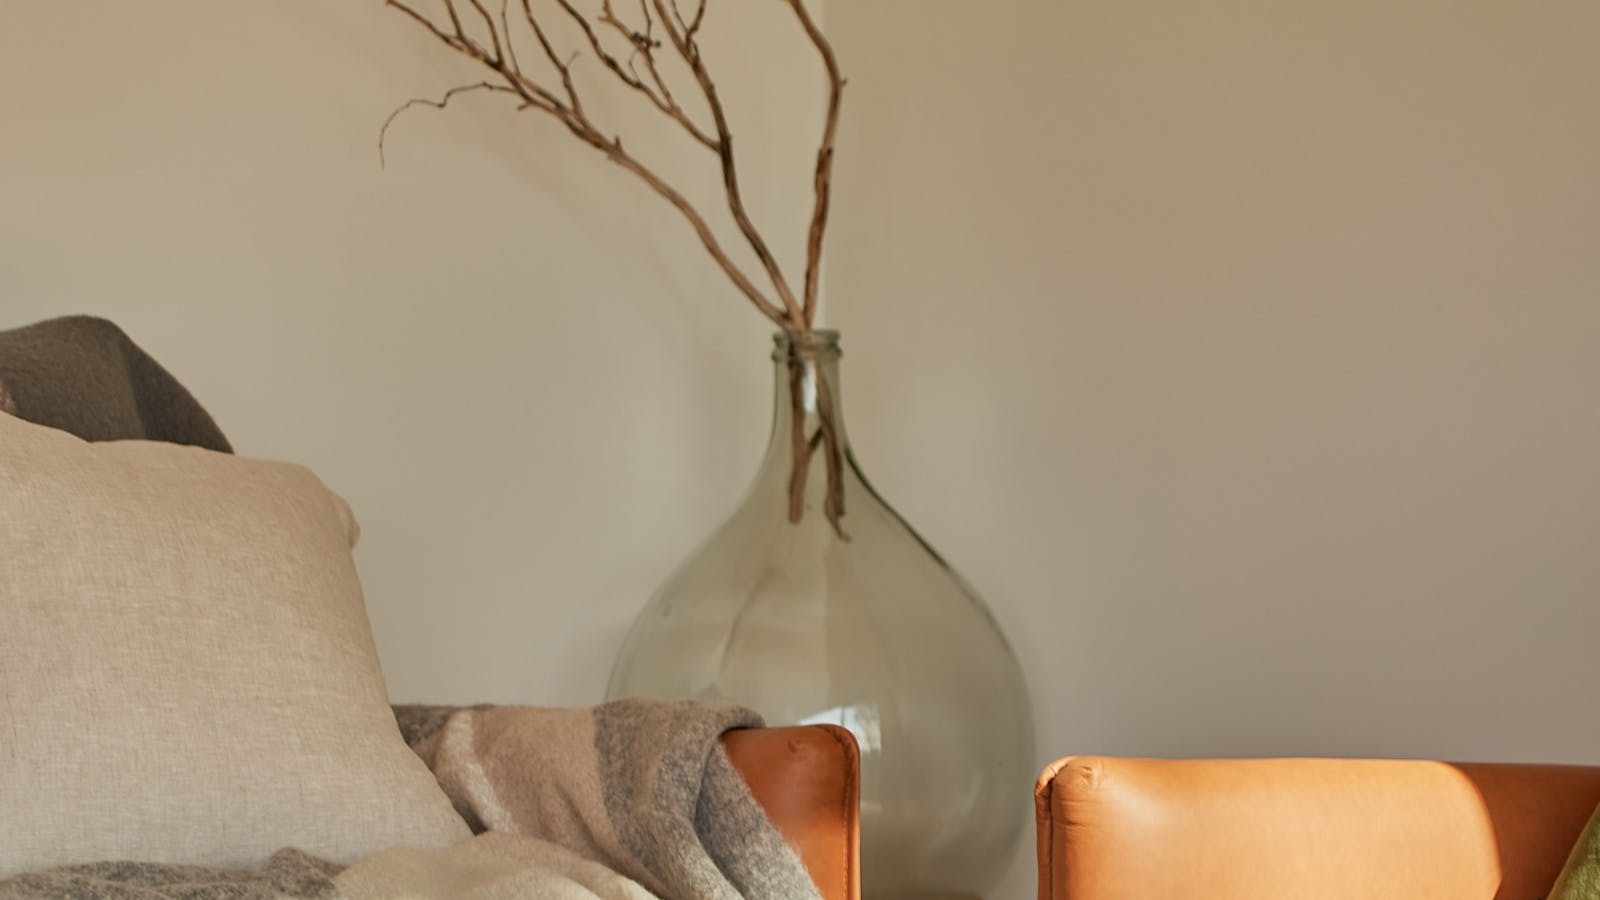 Exquisite furnishings create optimum comfort